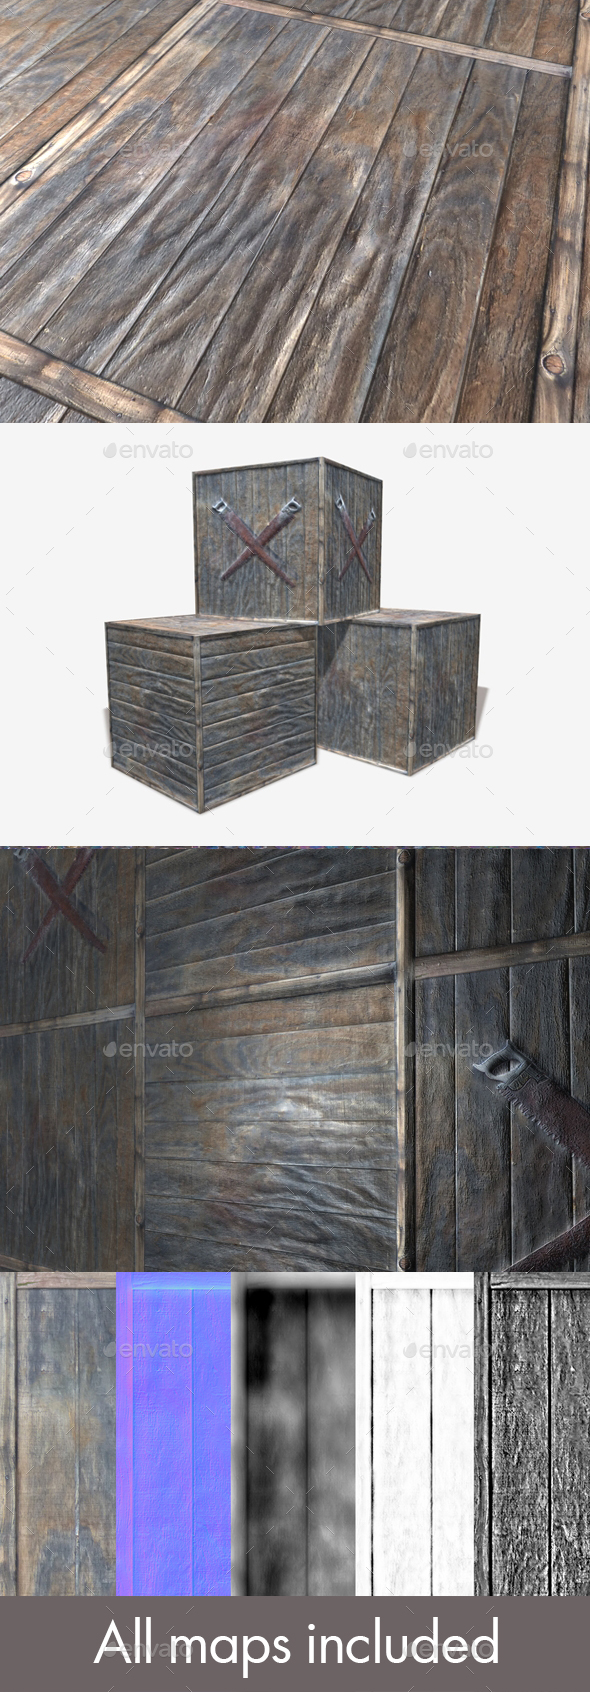 3 Wooden Crate - 3Docean 24053482